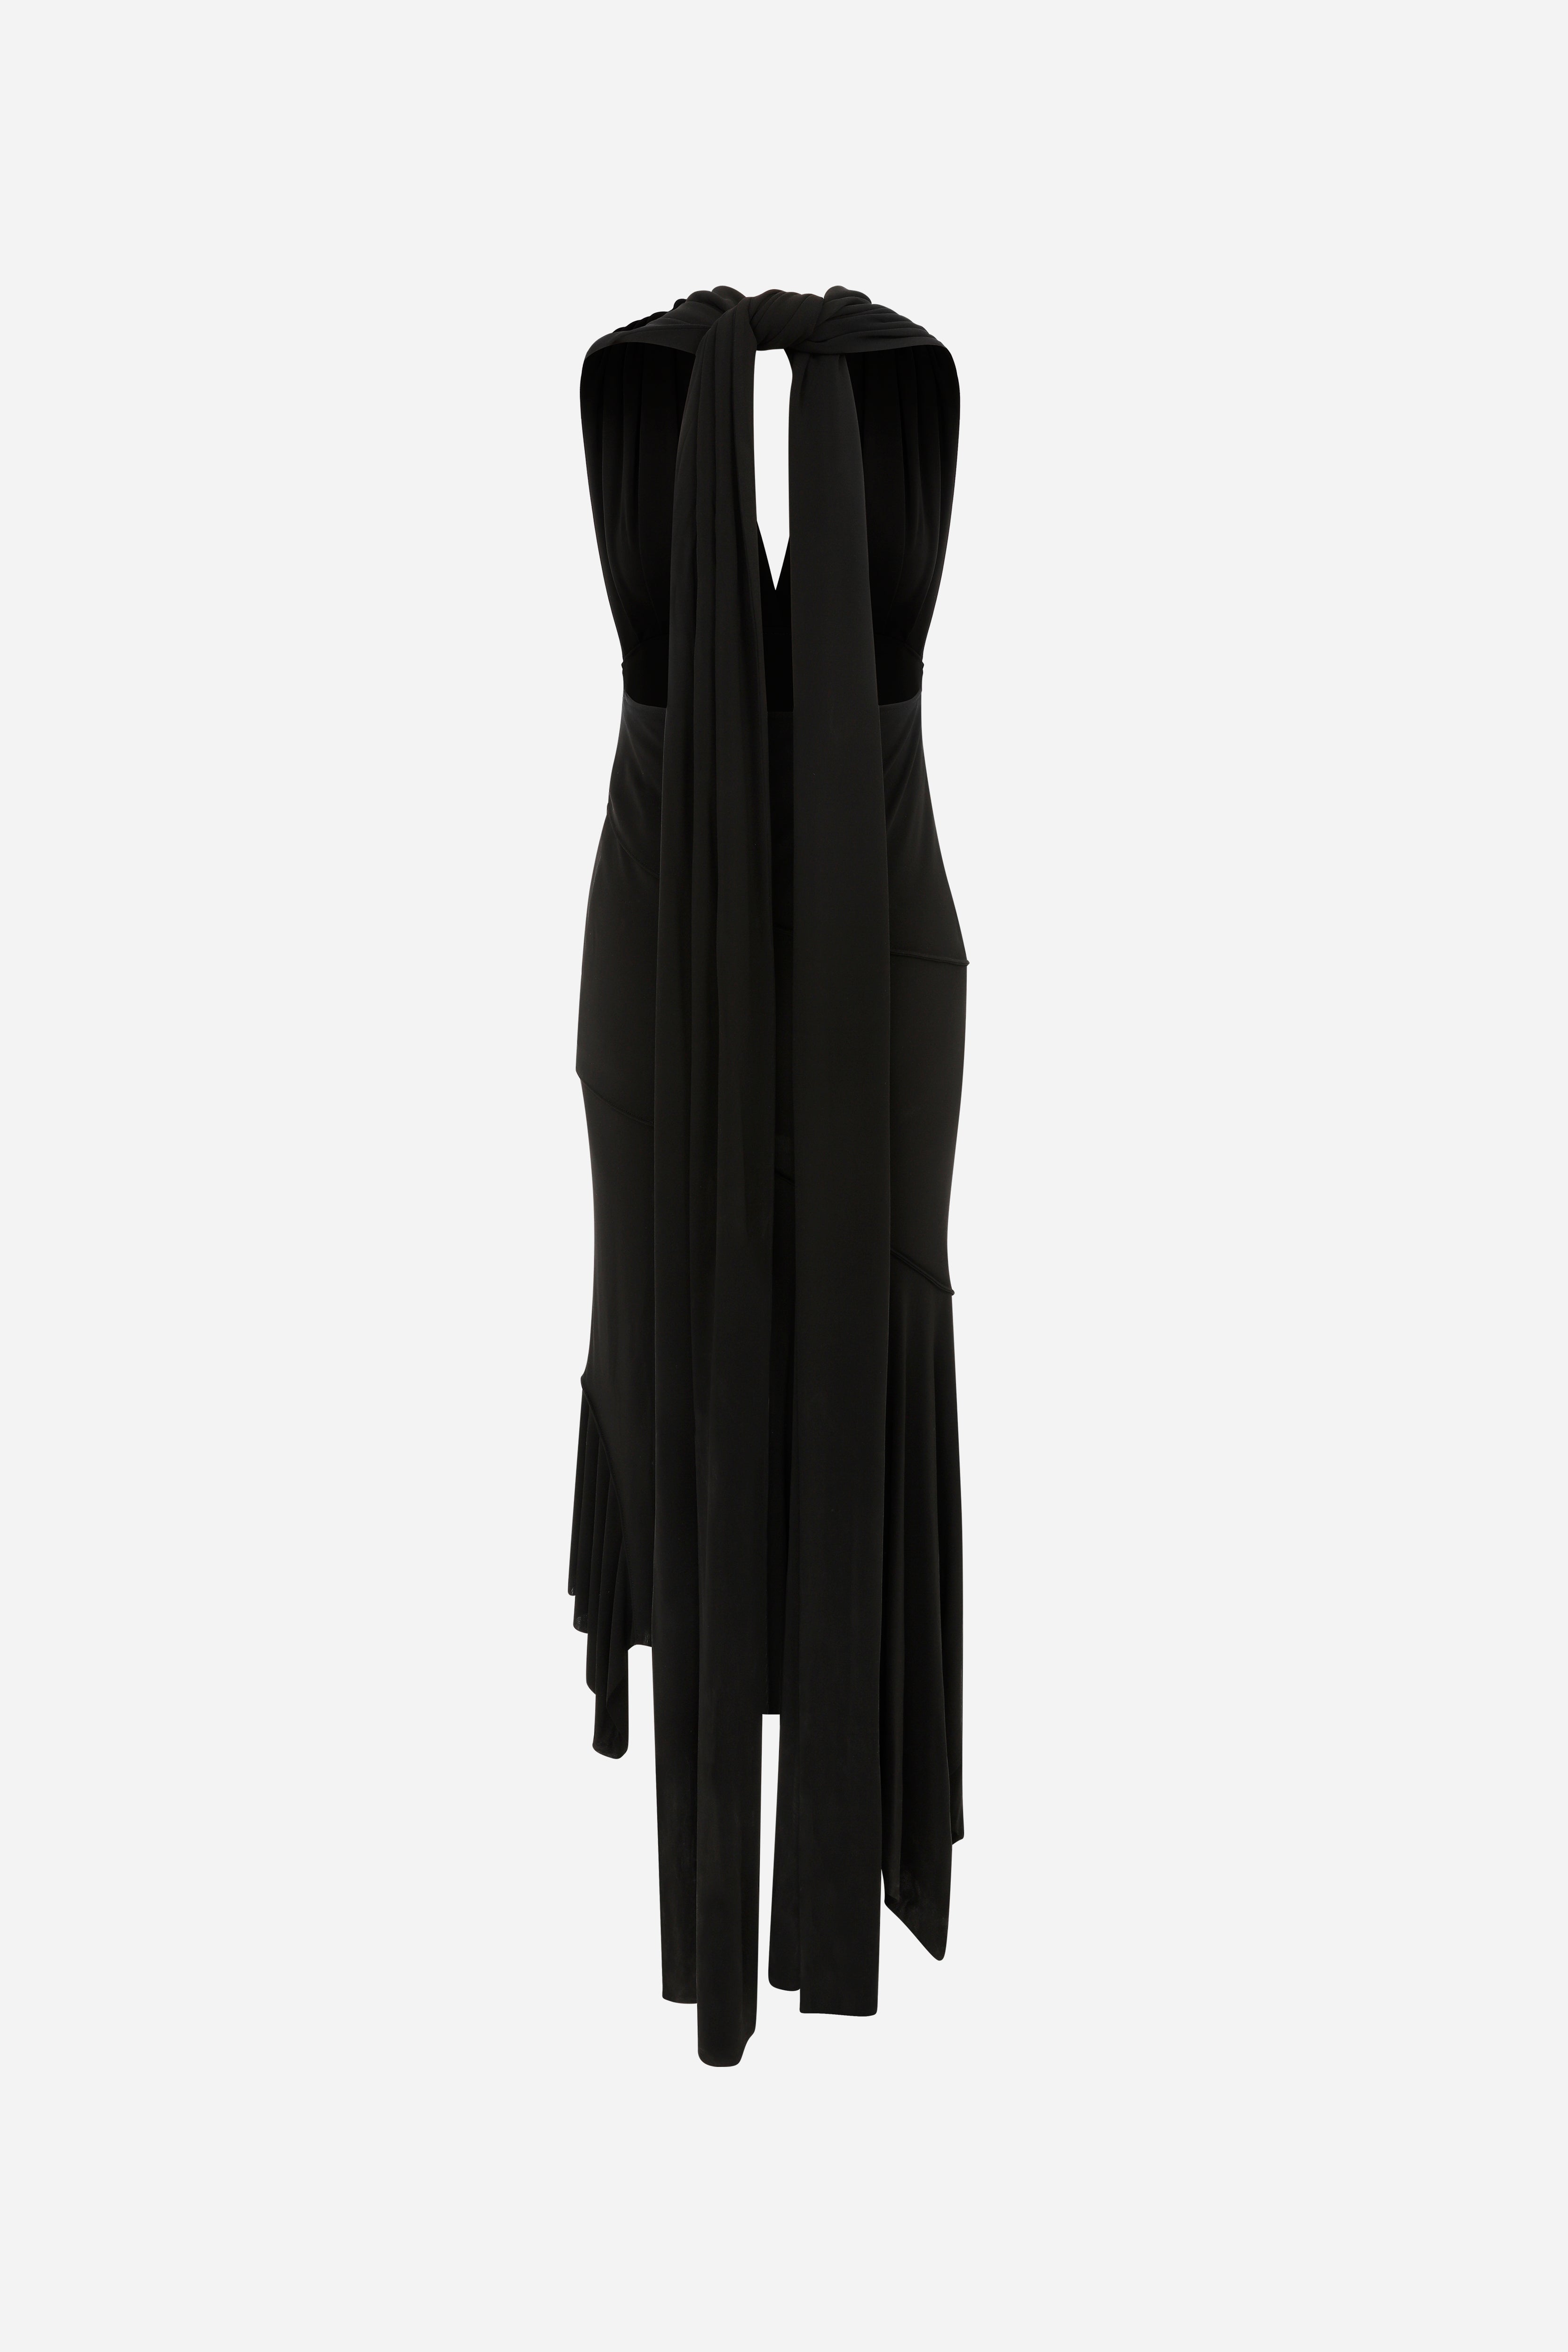 Esha - V Neck Dress With Knotted Details